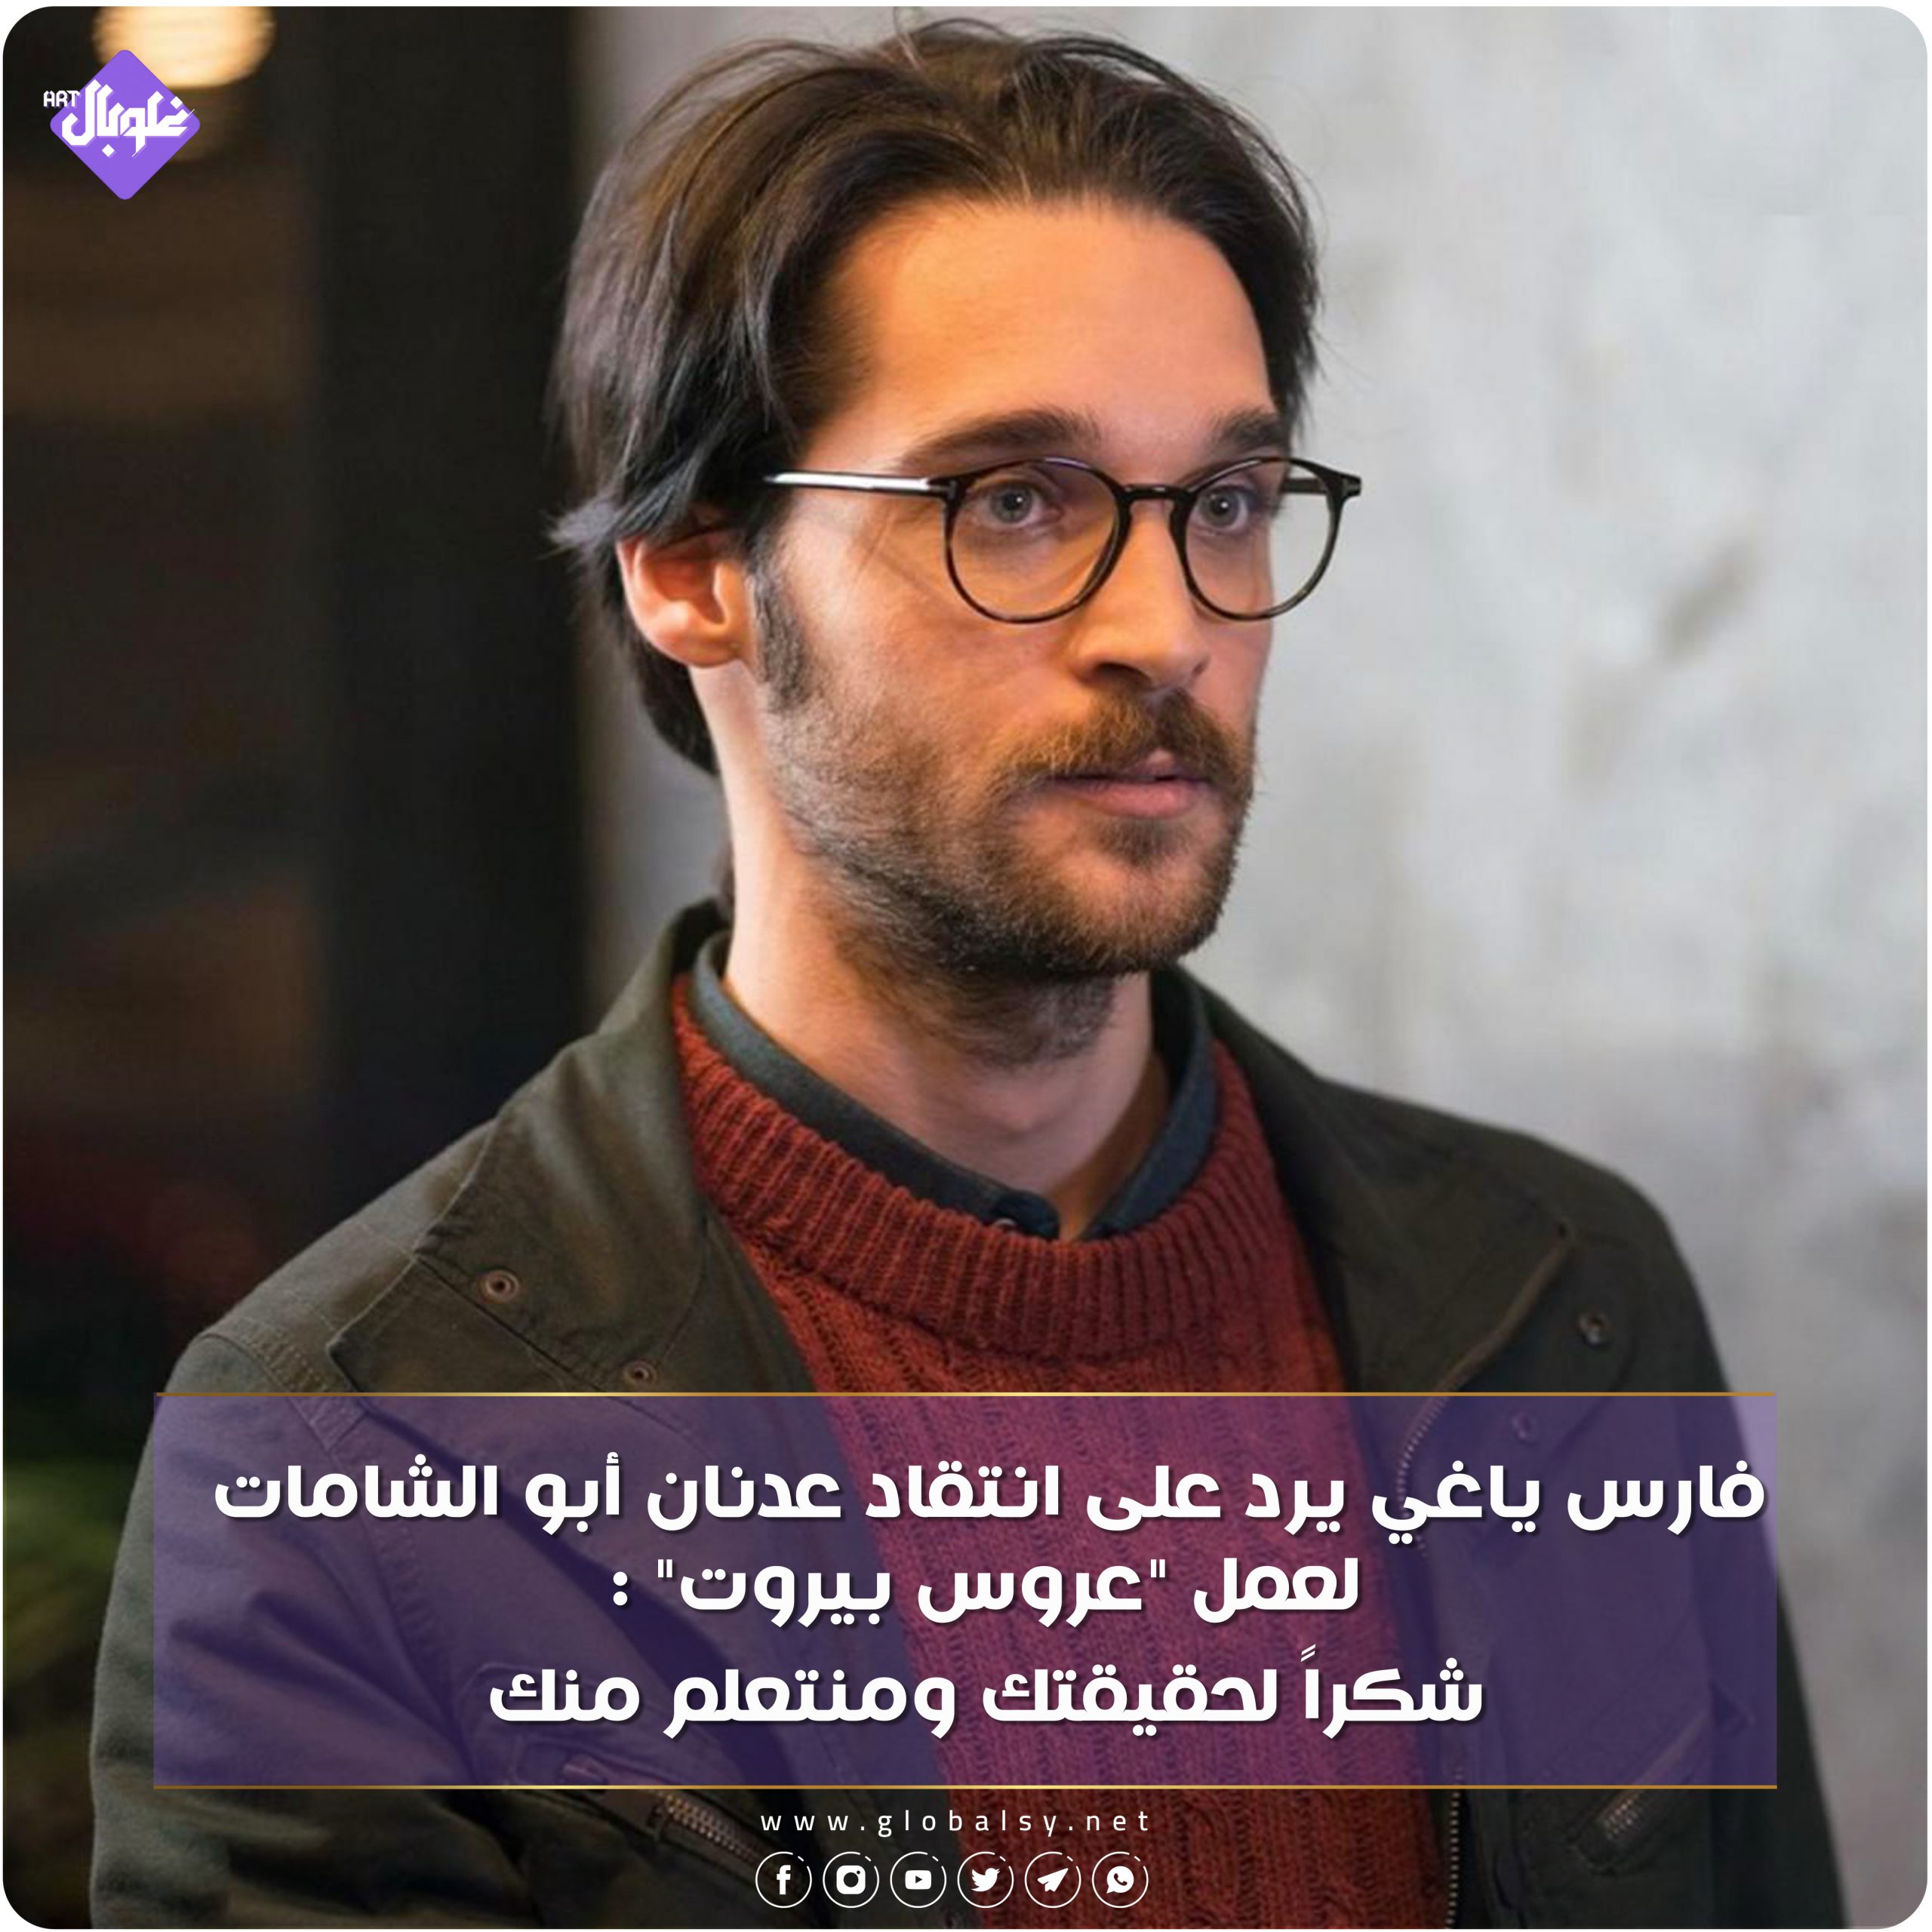 فارس ياغي يرد على انتقاد عدنان أبو الشامات لعمل "عروس بيروت"